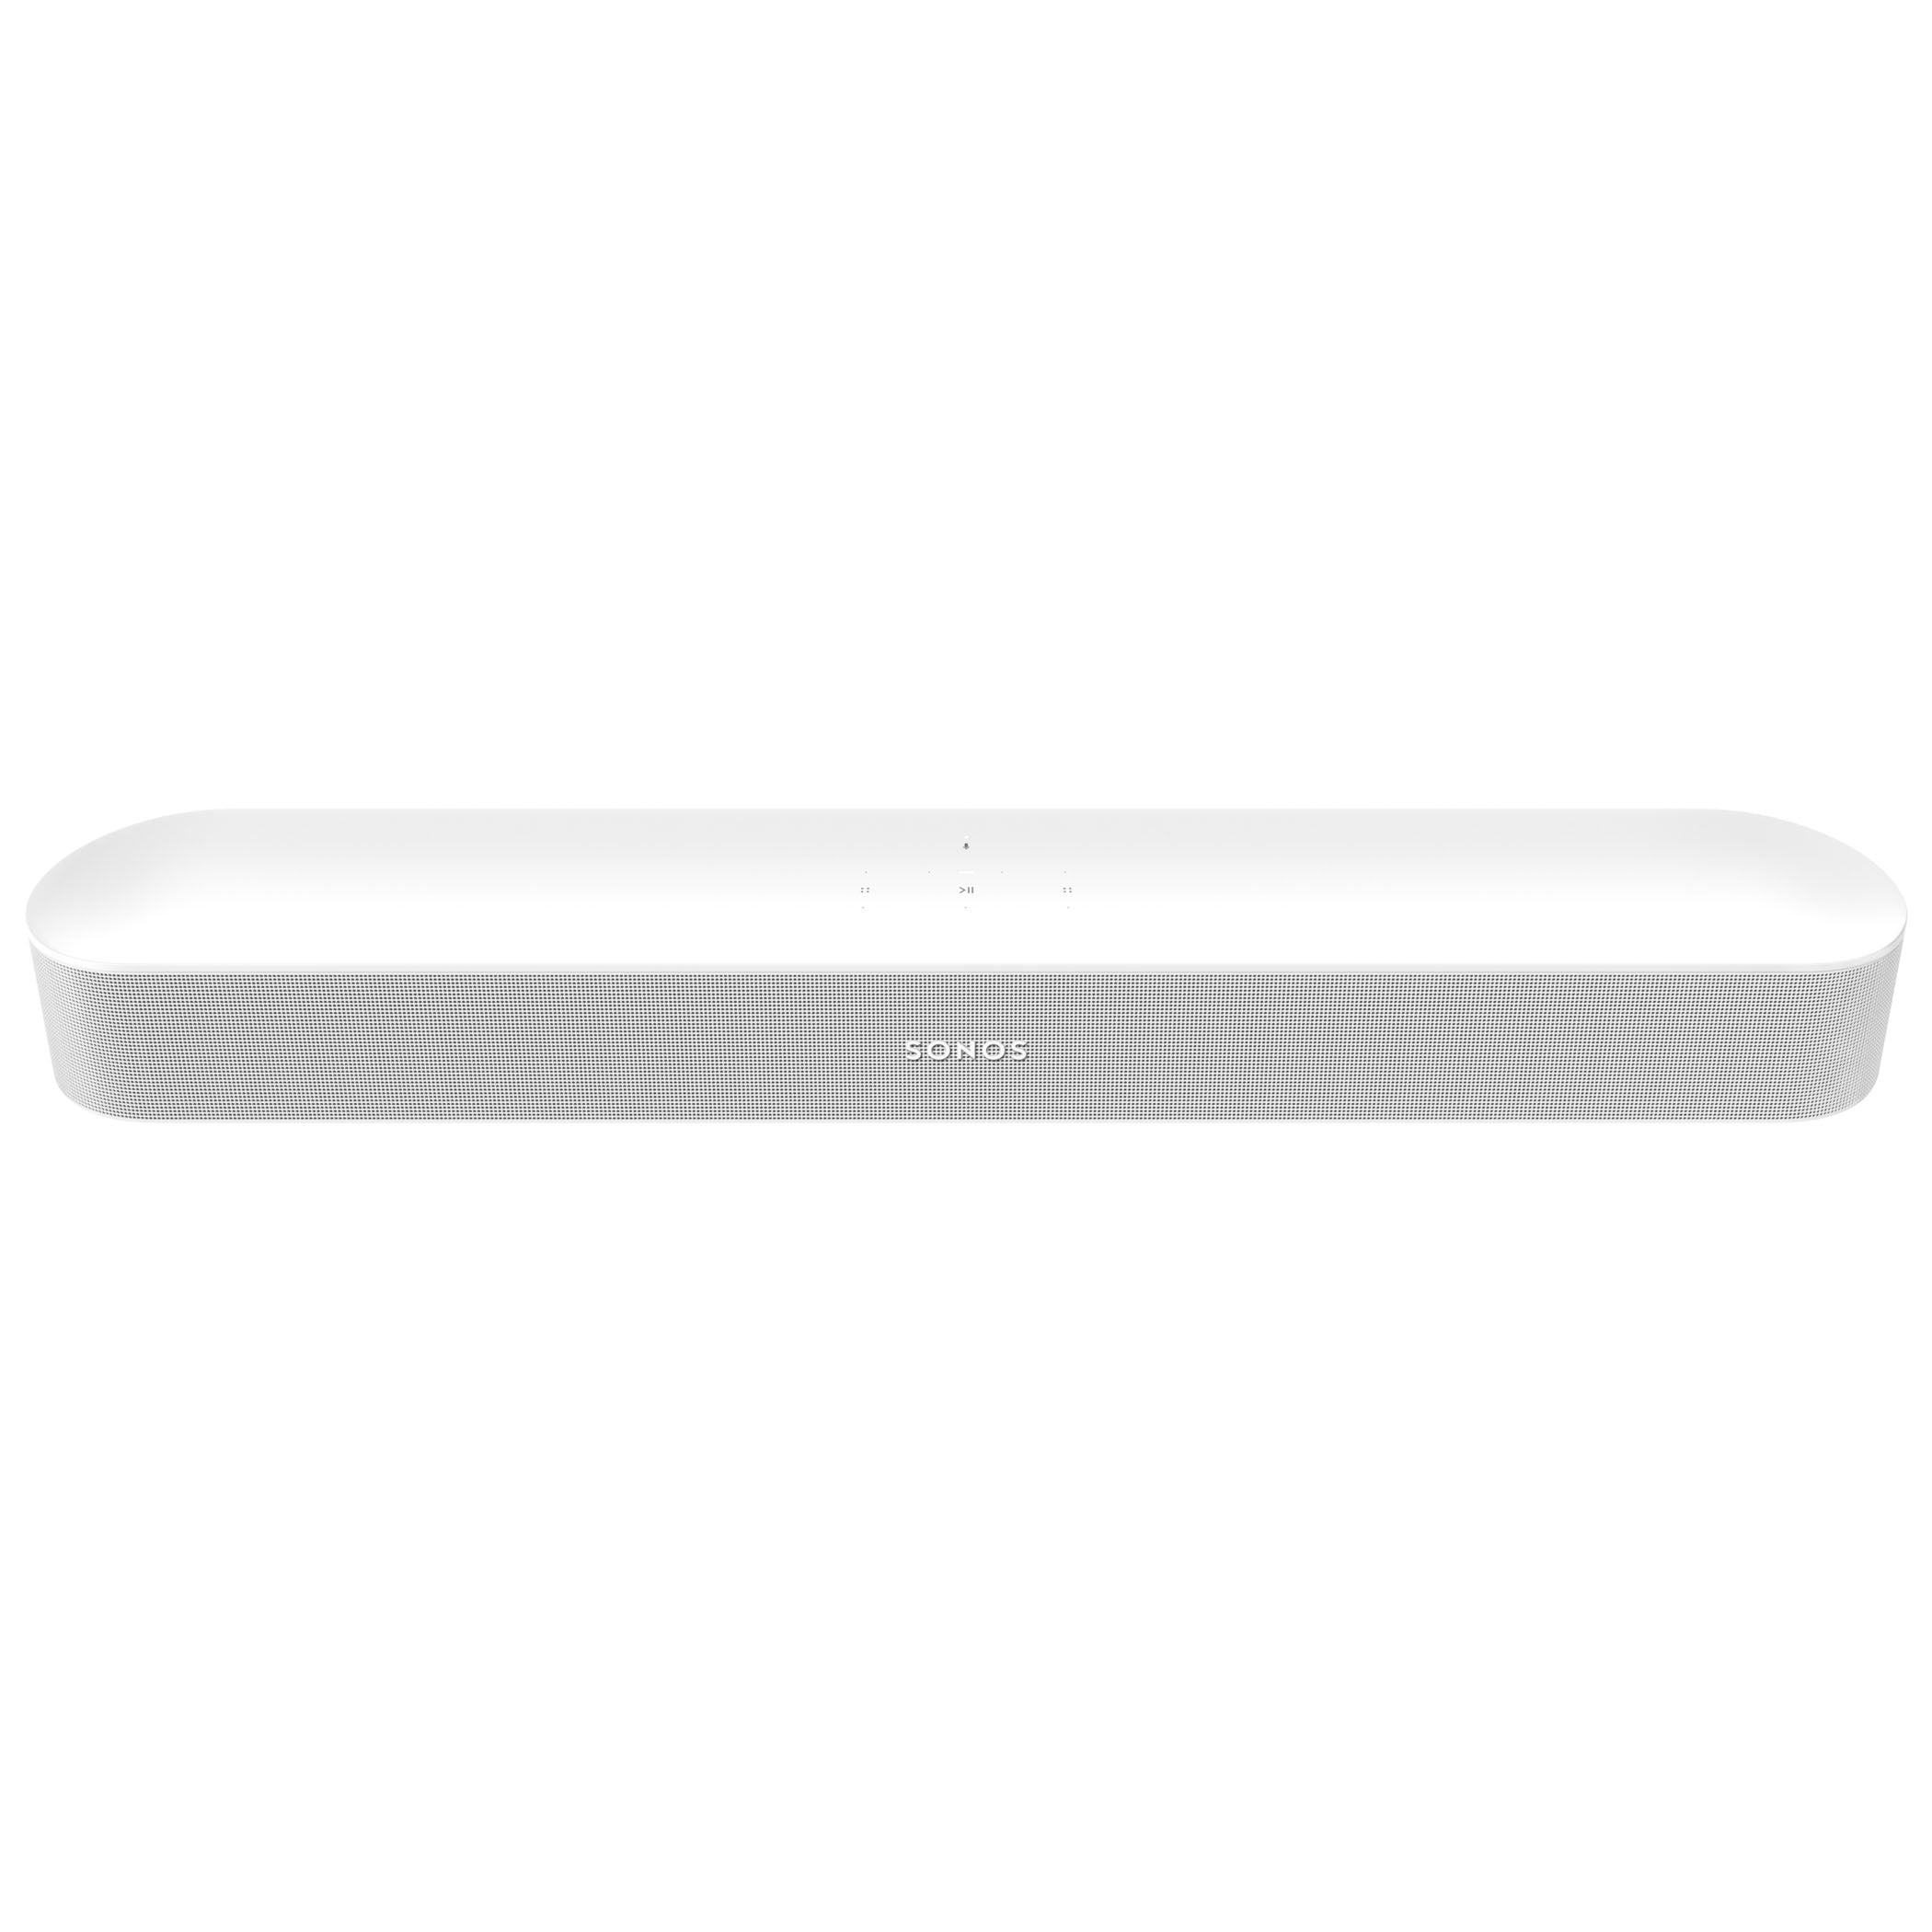 Sonos Beam - The Smart Soundbar for Your TV